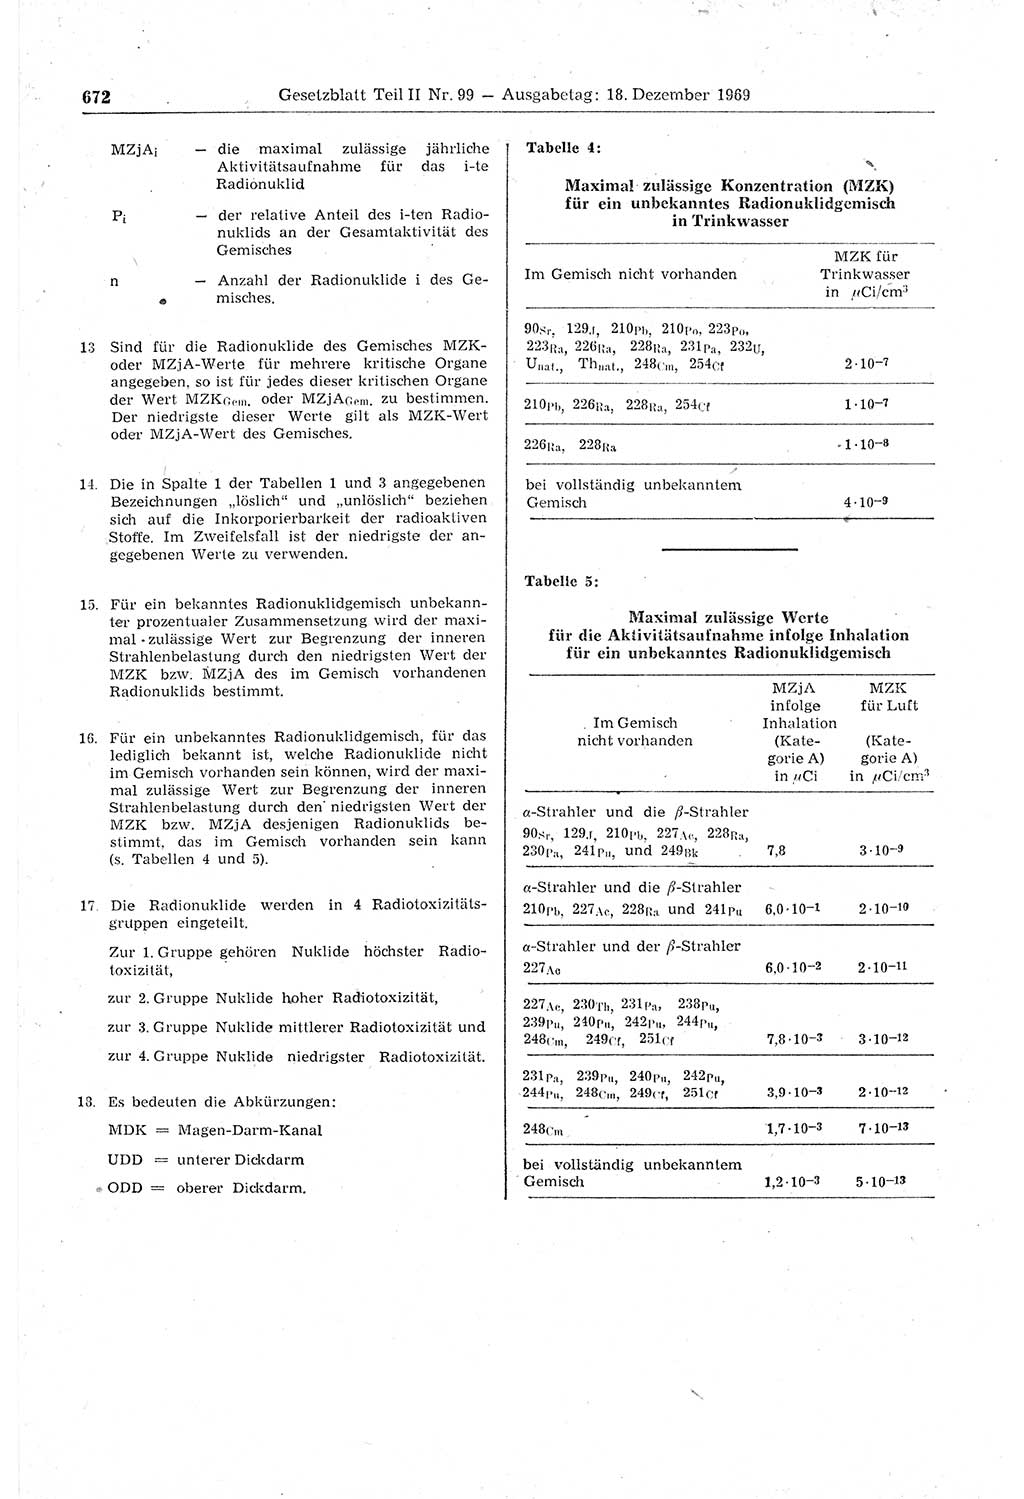 Gesetzblatt (GBl.) der Deutschen Demokratischen Republik (DDR) Teil ⅠⅠ 1969, Seite 672 (GBl. DDR ⅠⅠ 1969, S. 672)